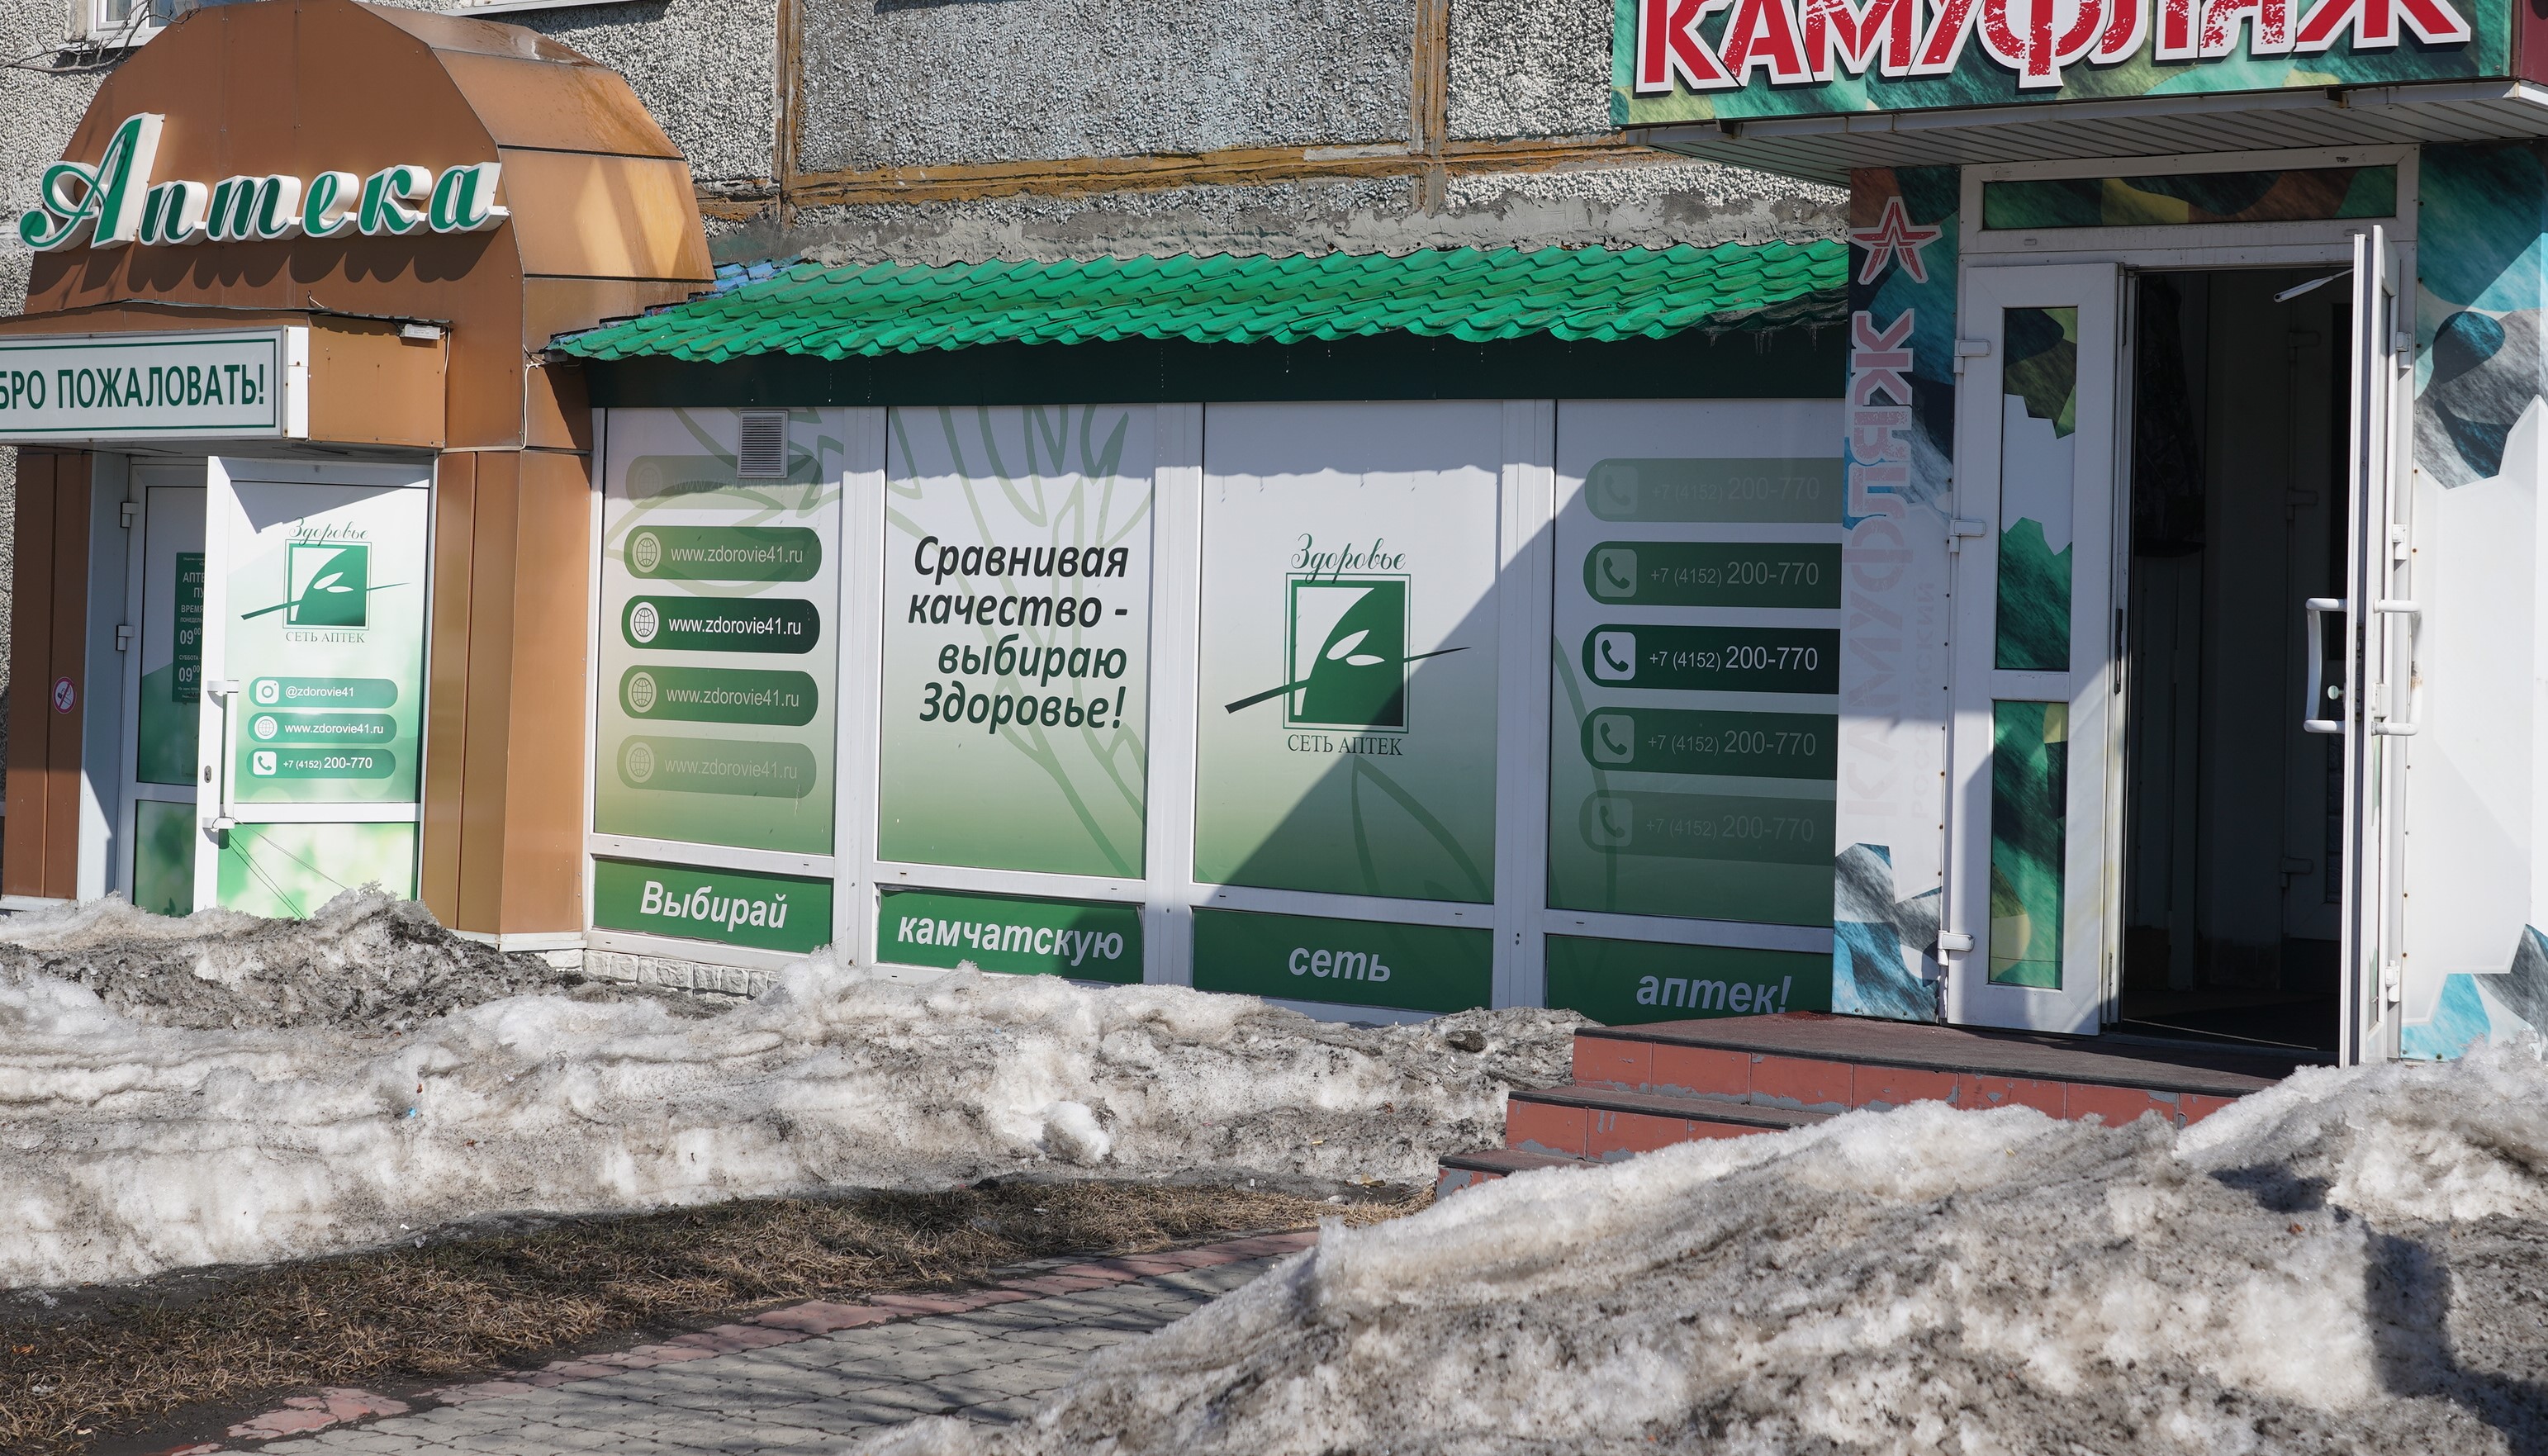 В Петропавловске собственники демонтируют незаконно установленные рекламные конструкции